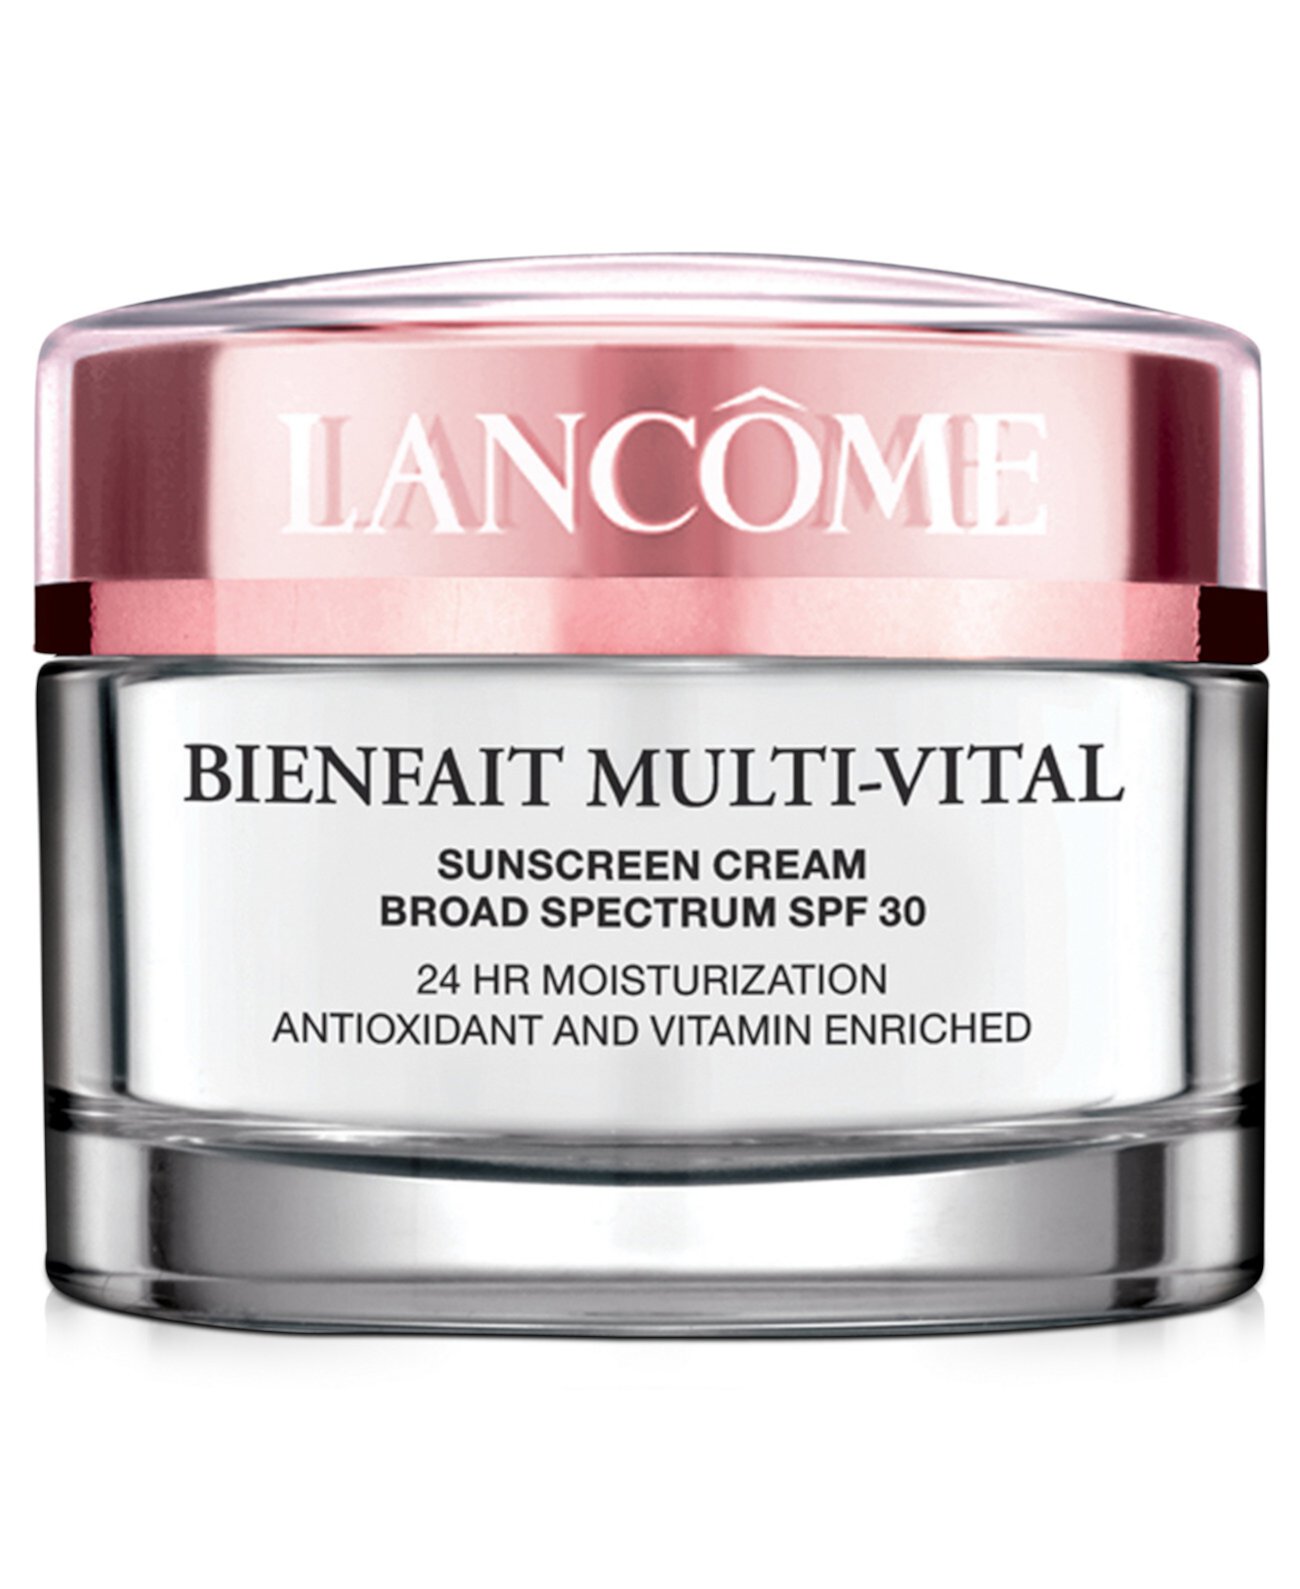 Bienfait Multi-Vital SPF 30-дневный крем-увлажняющий крем и солнцезащитный крем, 1,7 унции. Lancome